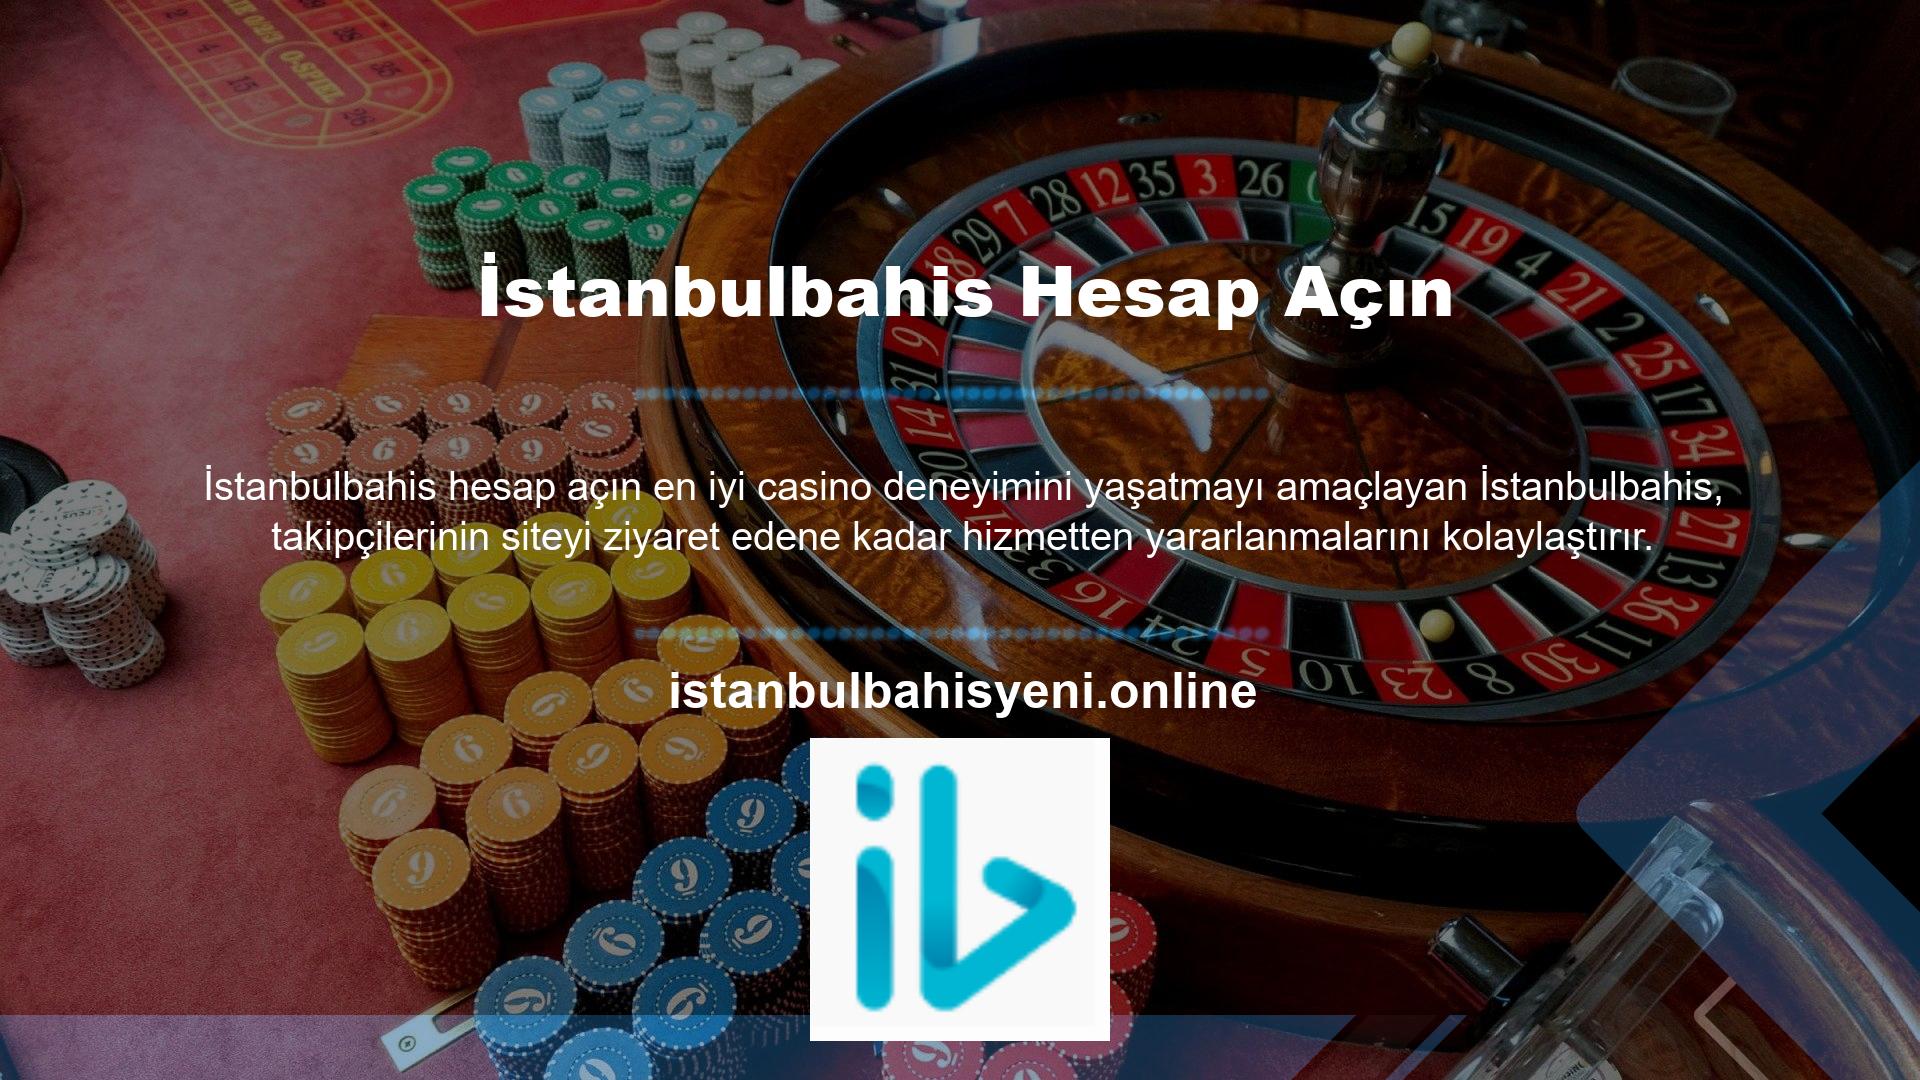 İstanbulbahis, siteye üye olmayı seçen kullanıcılar için hesap açma sürecini oldukça basit hale getirmektedir